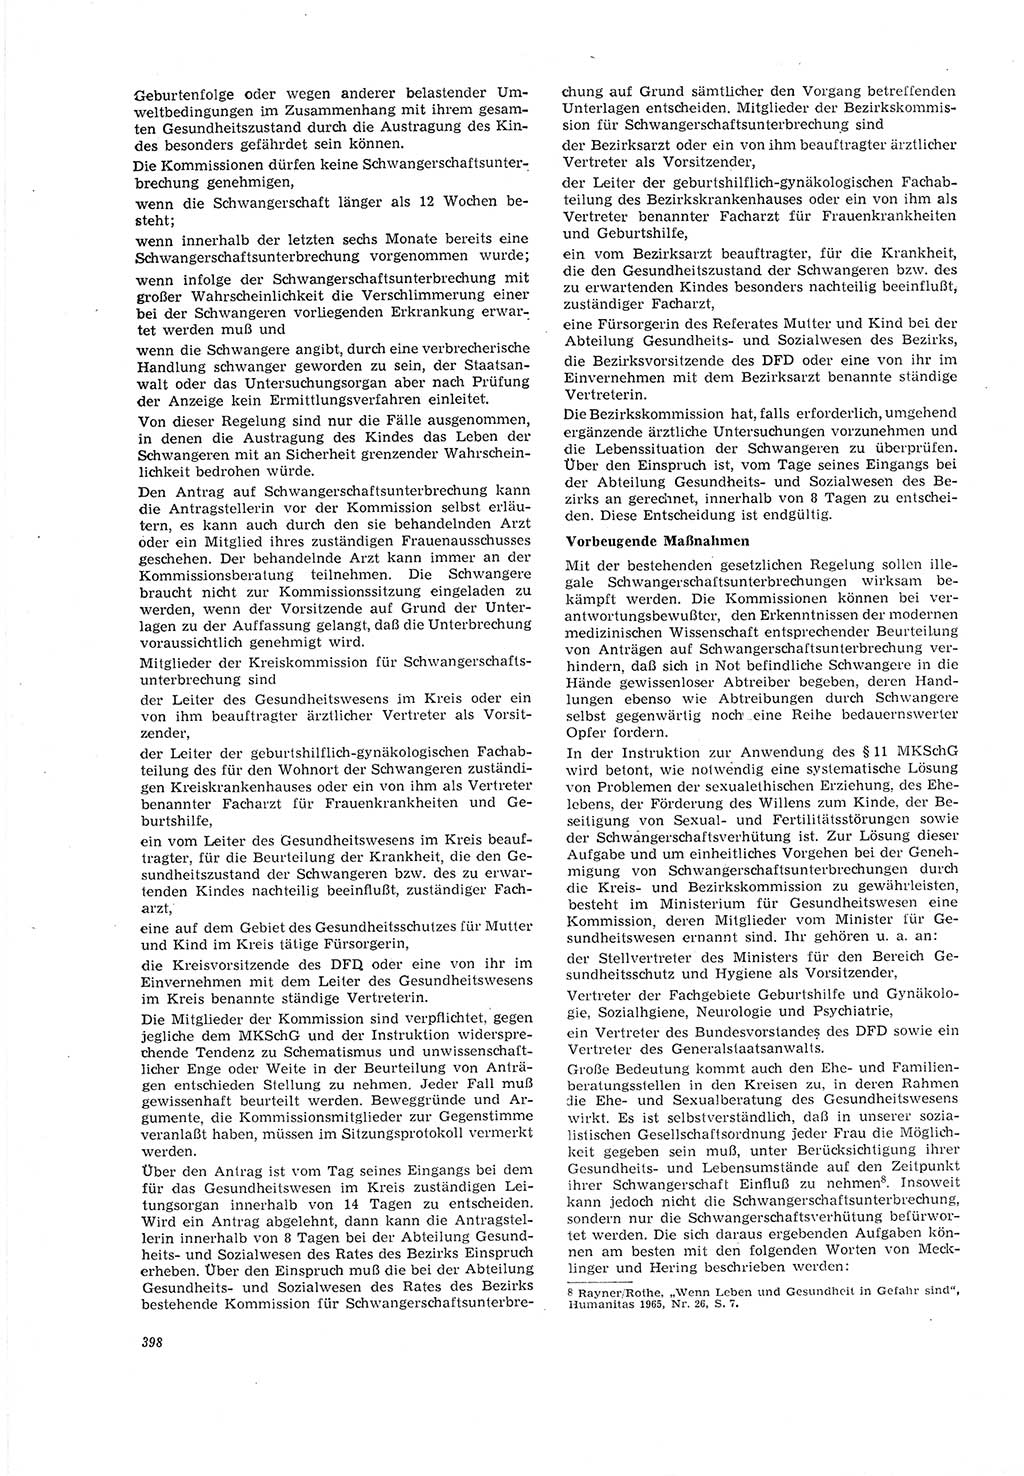 Neue Justiz (NJ), Zeitschrift für Recht und Rechtswissenschaft [Deutsche Demokratische Republik (DDR)], 20. Jahrgang 1966, Seite 398 (NJ DDR 1966, S. 398)